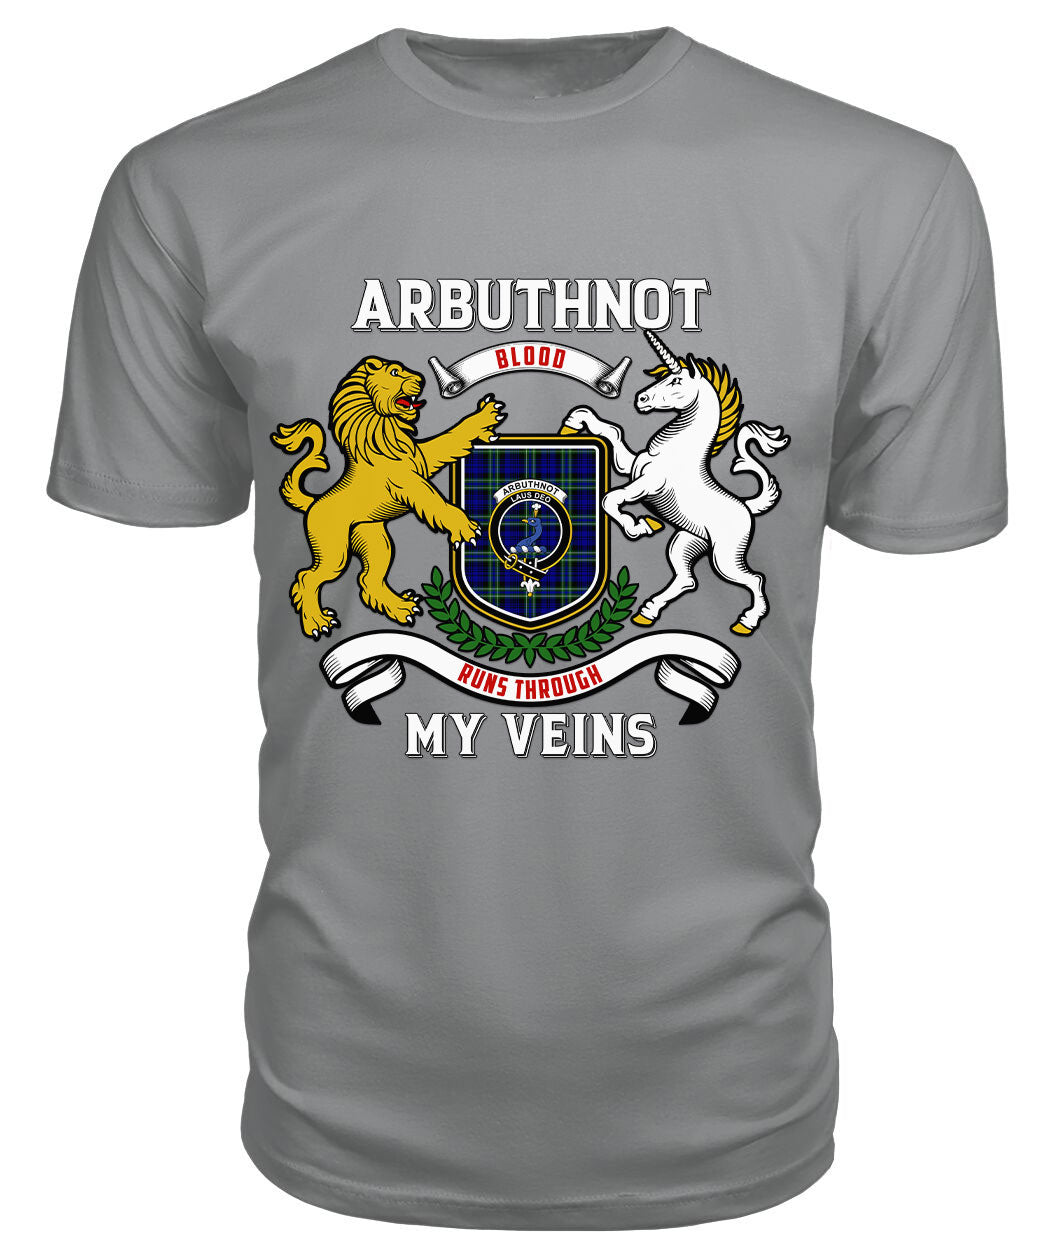 Arbuthnot Modern Tartan Crest 2D T-shirt - Blood Runs Through My Veins Style